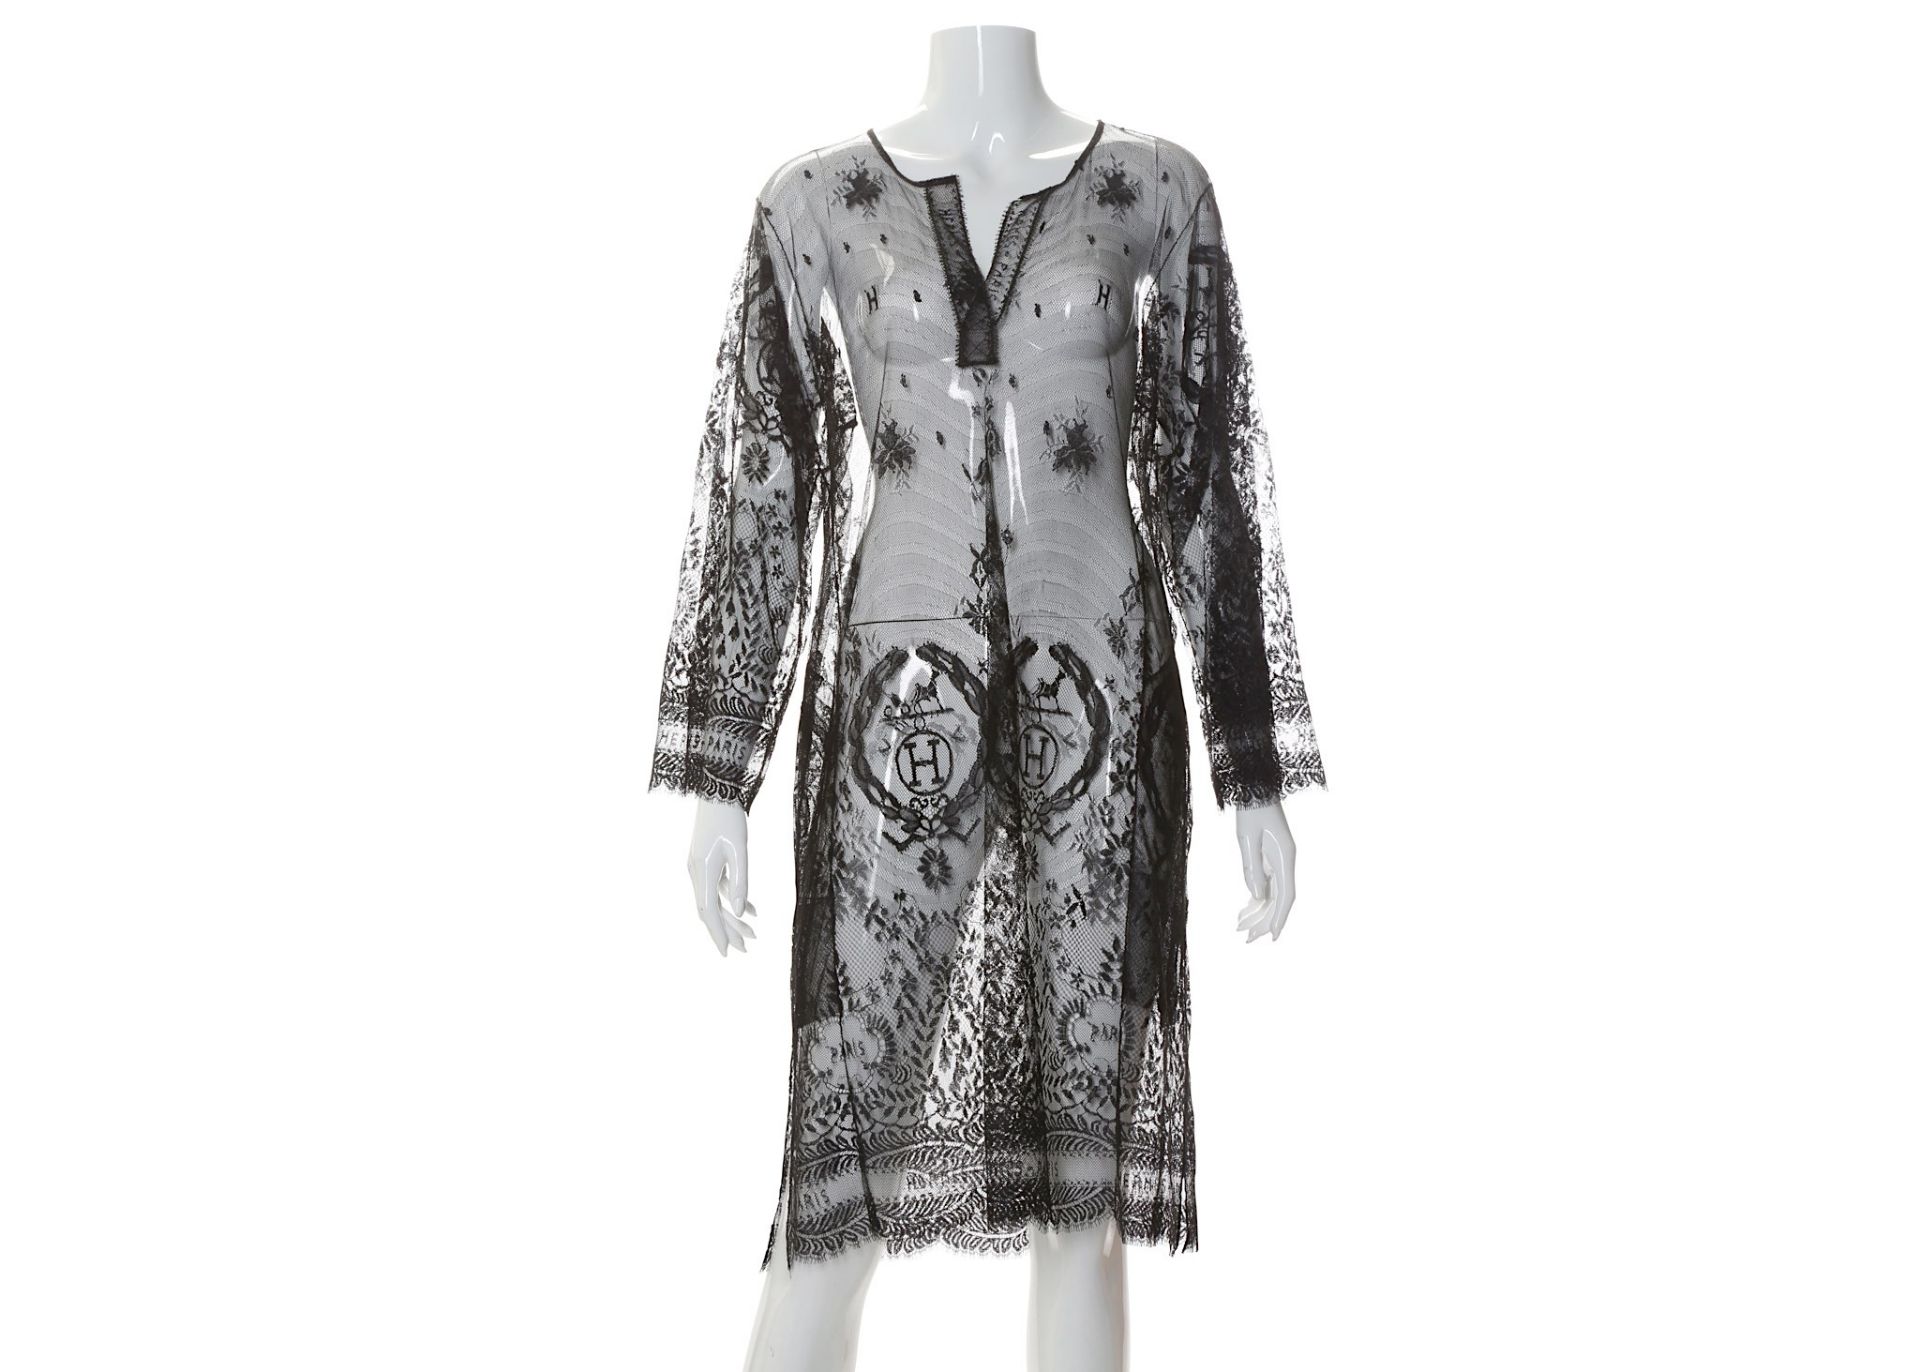 Hermes Black Sheer Net Dress, subtle H Design, bust 42"/108cm Condition Grade A Please refer to